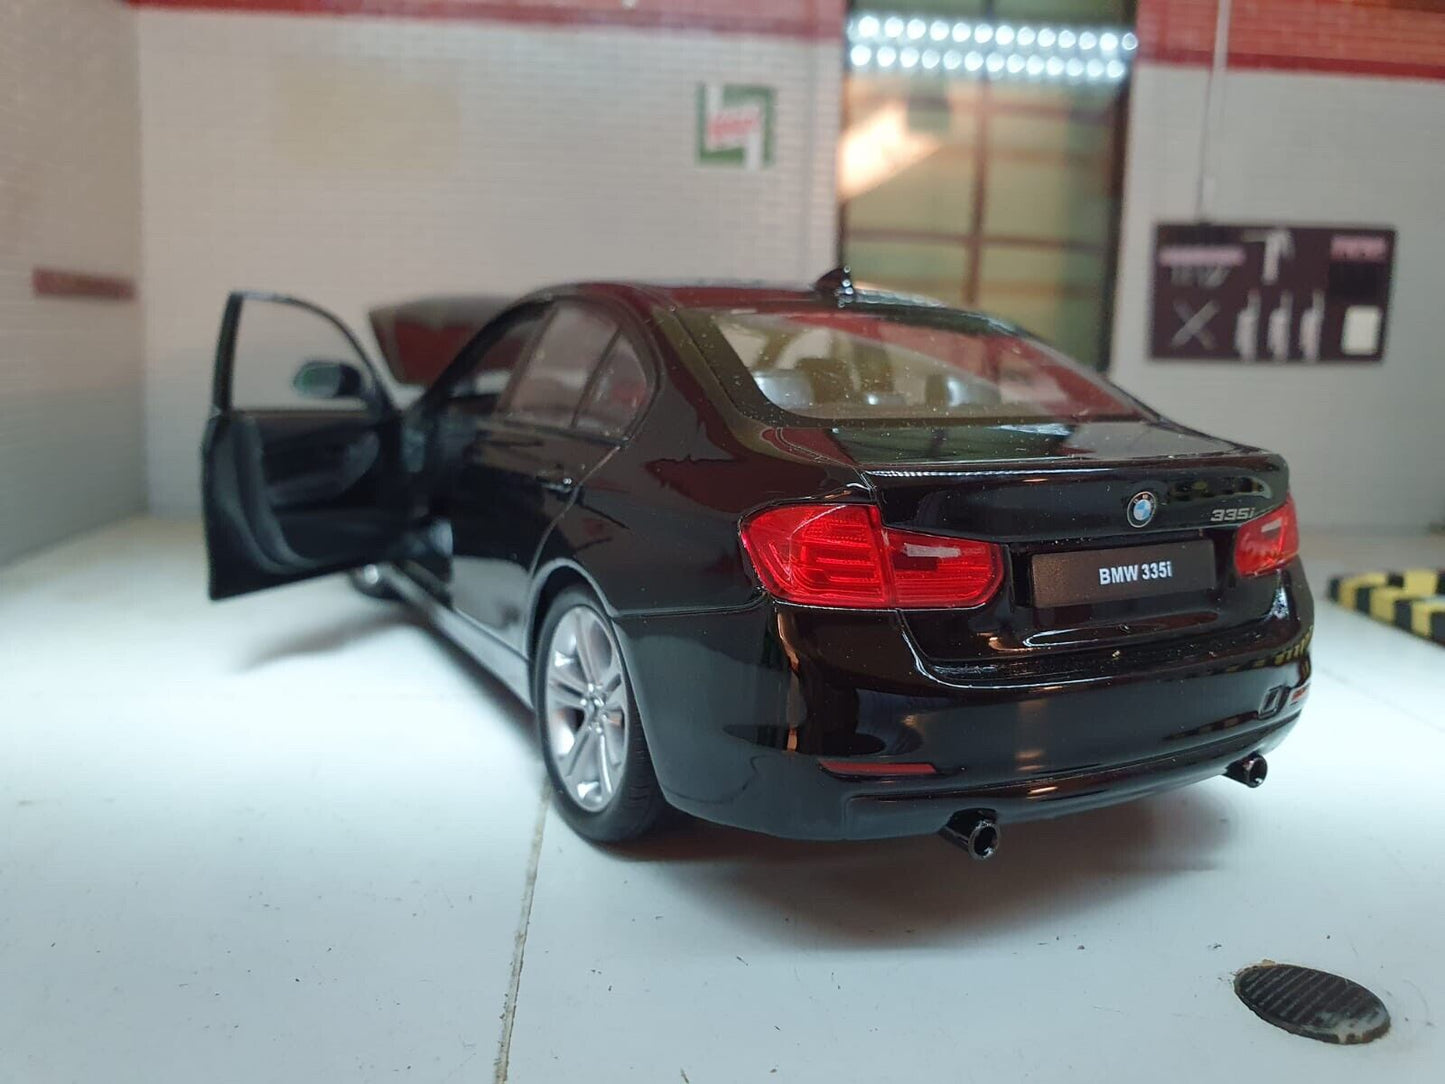 BMW 2015 Série 3 335i F30 24039 Welly 1:24